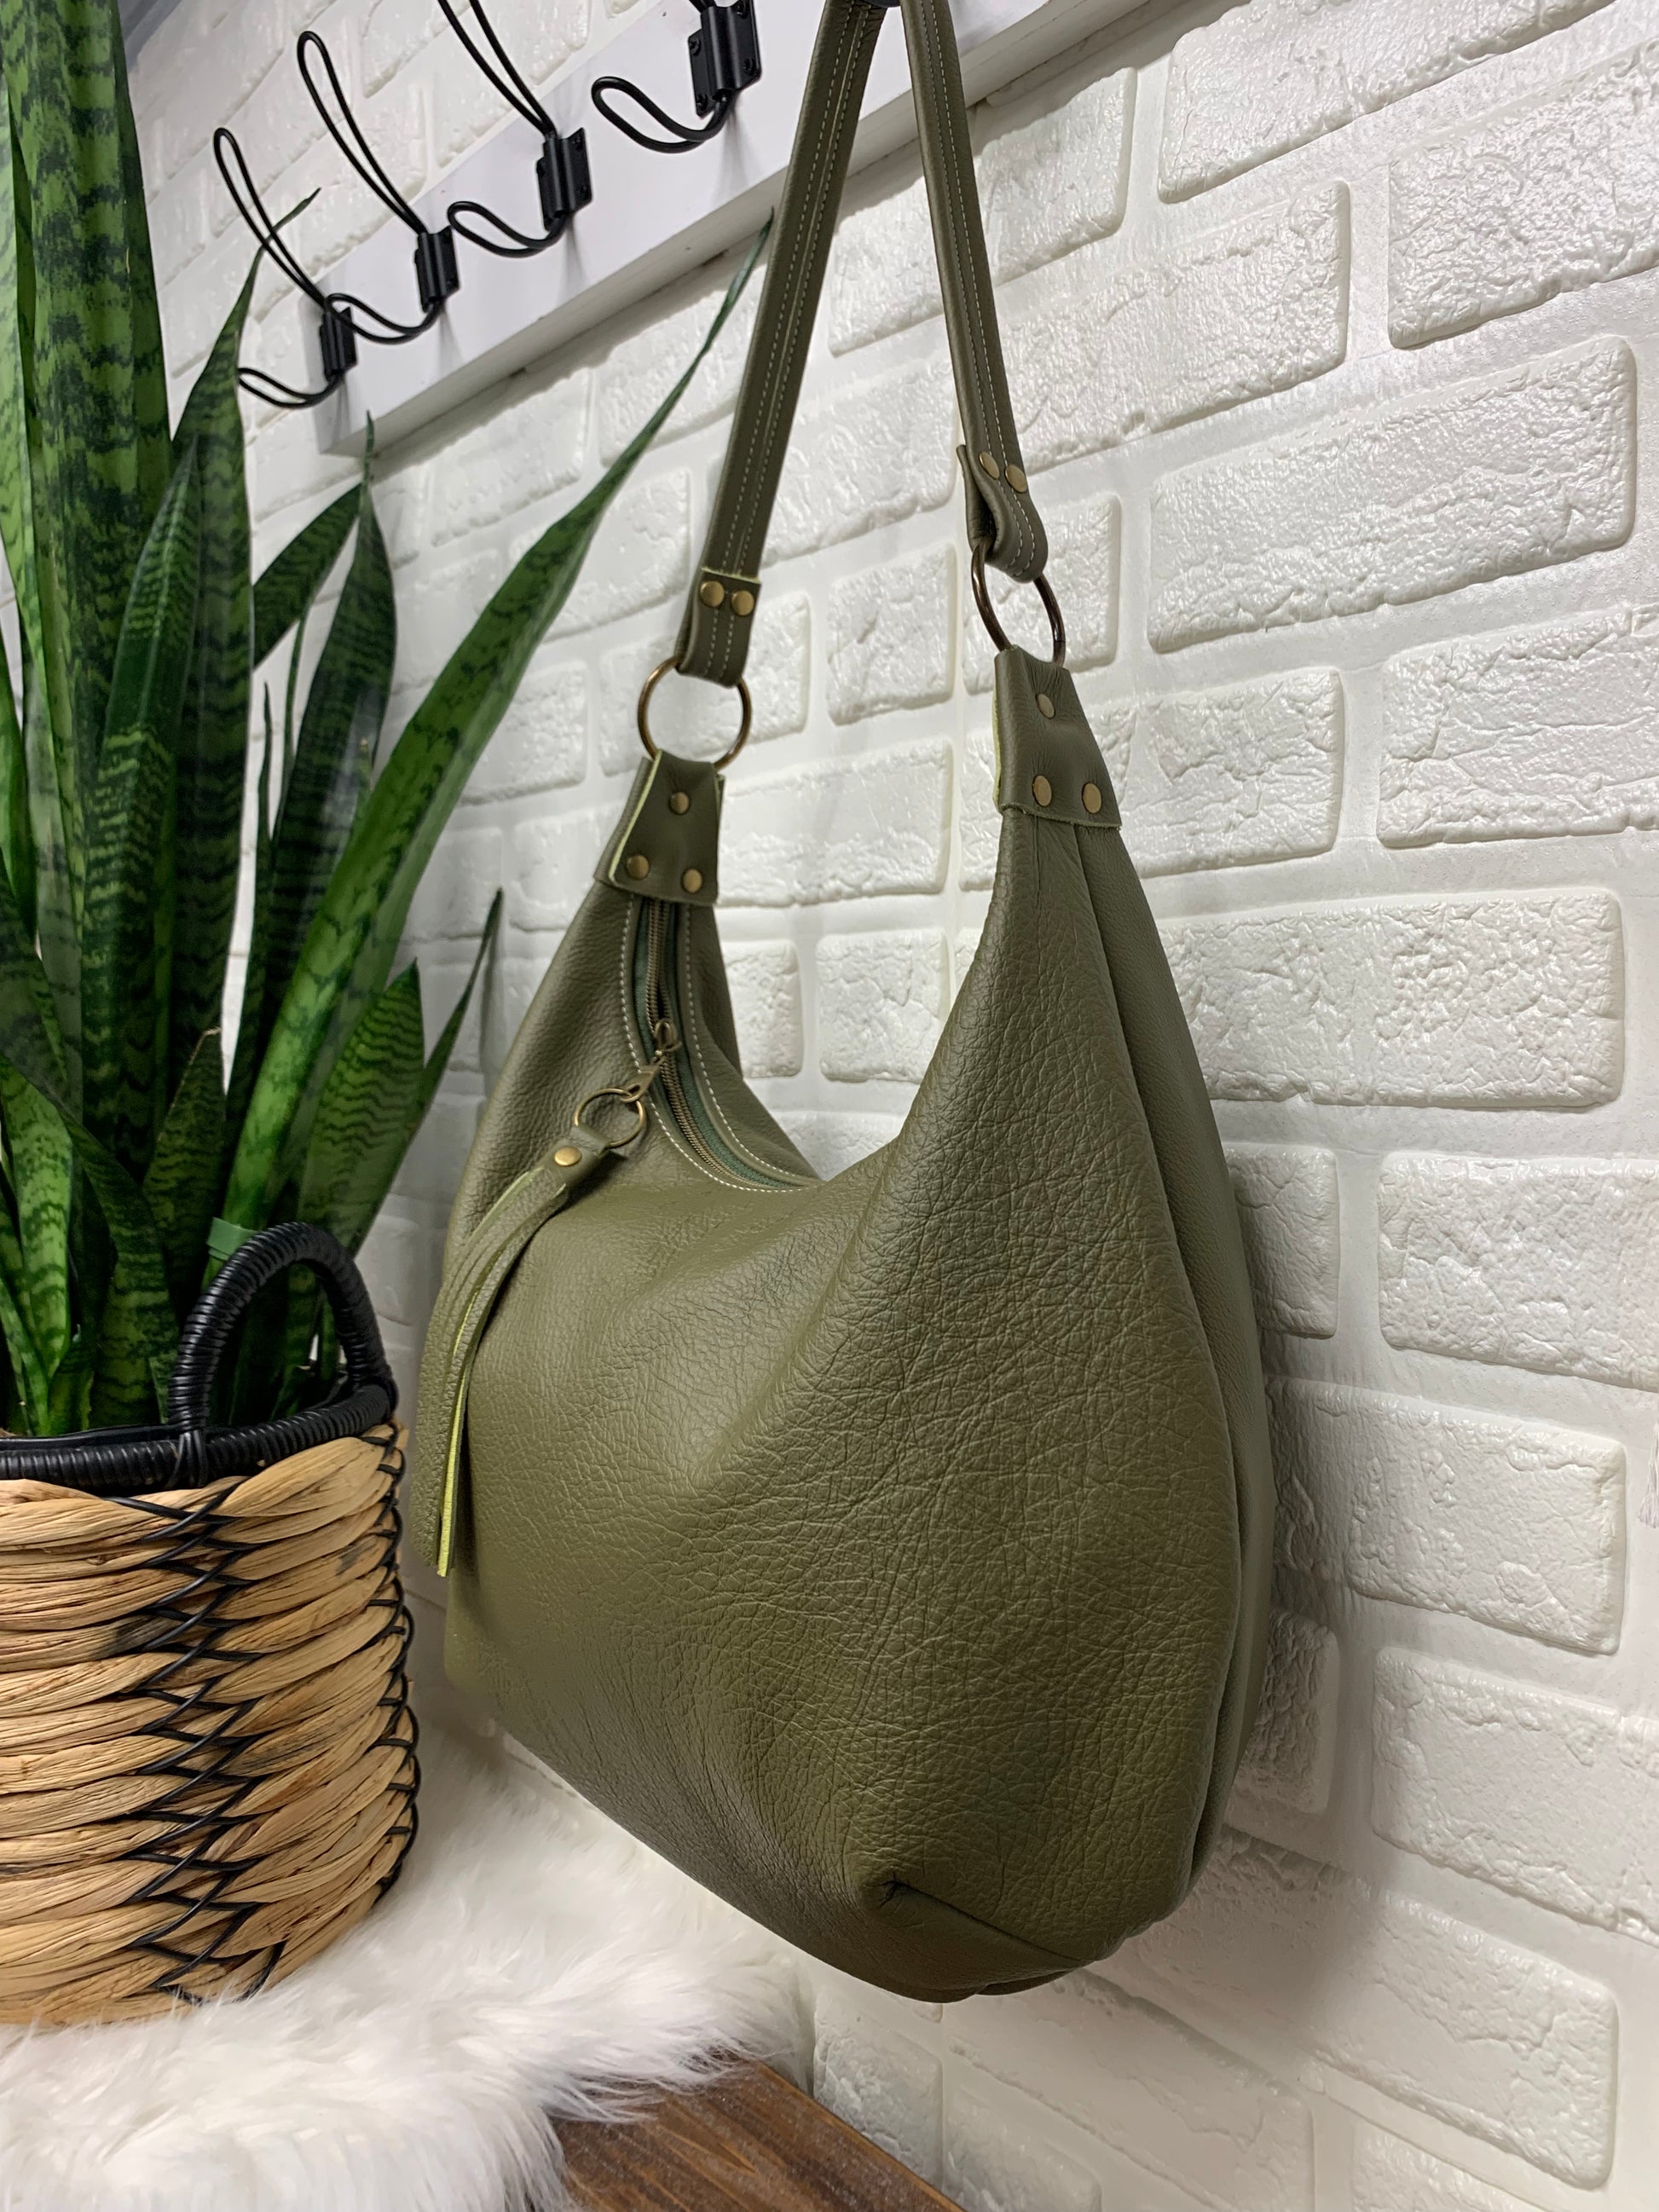 Olive green leather hobo bag, genuine leather handbag